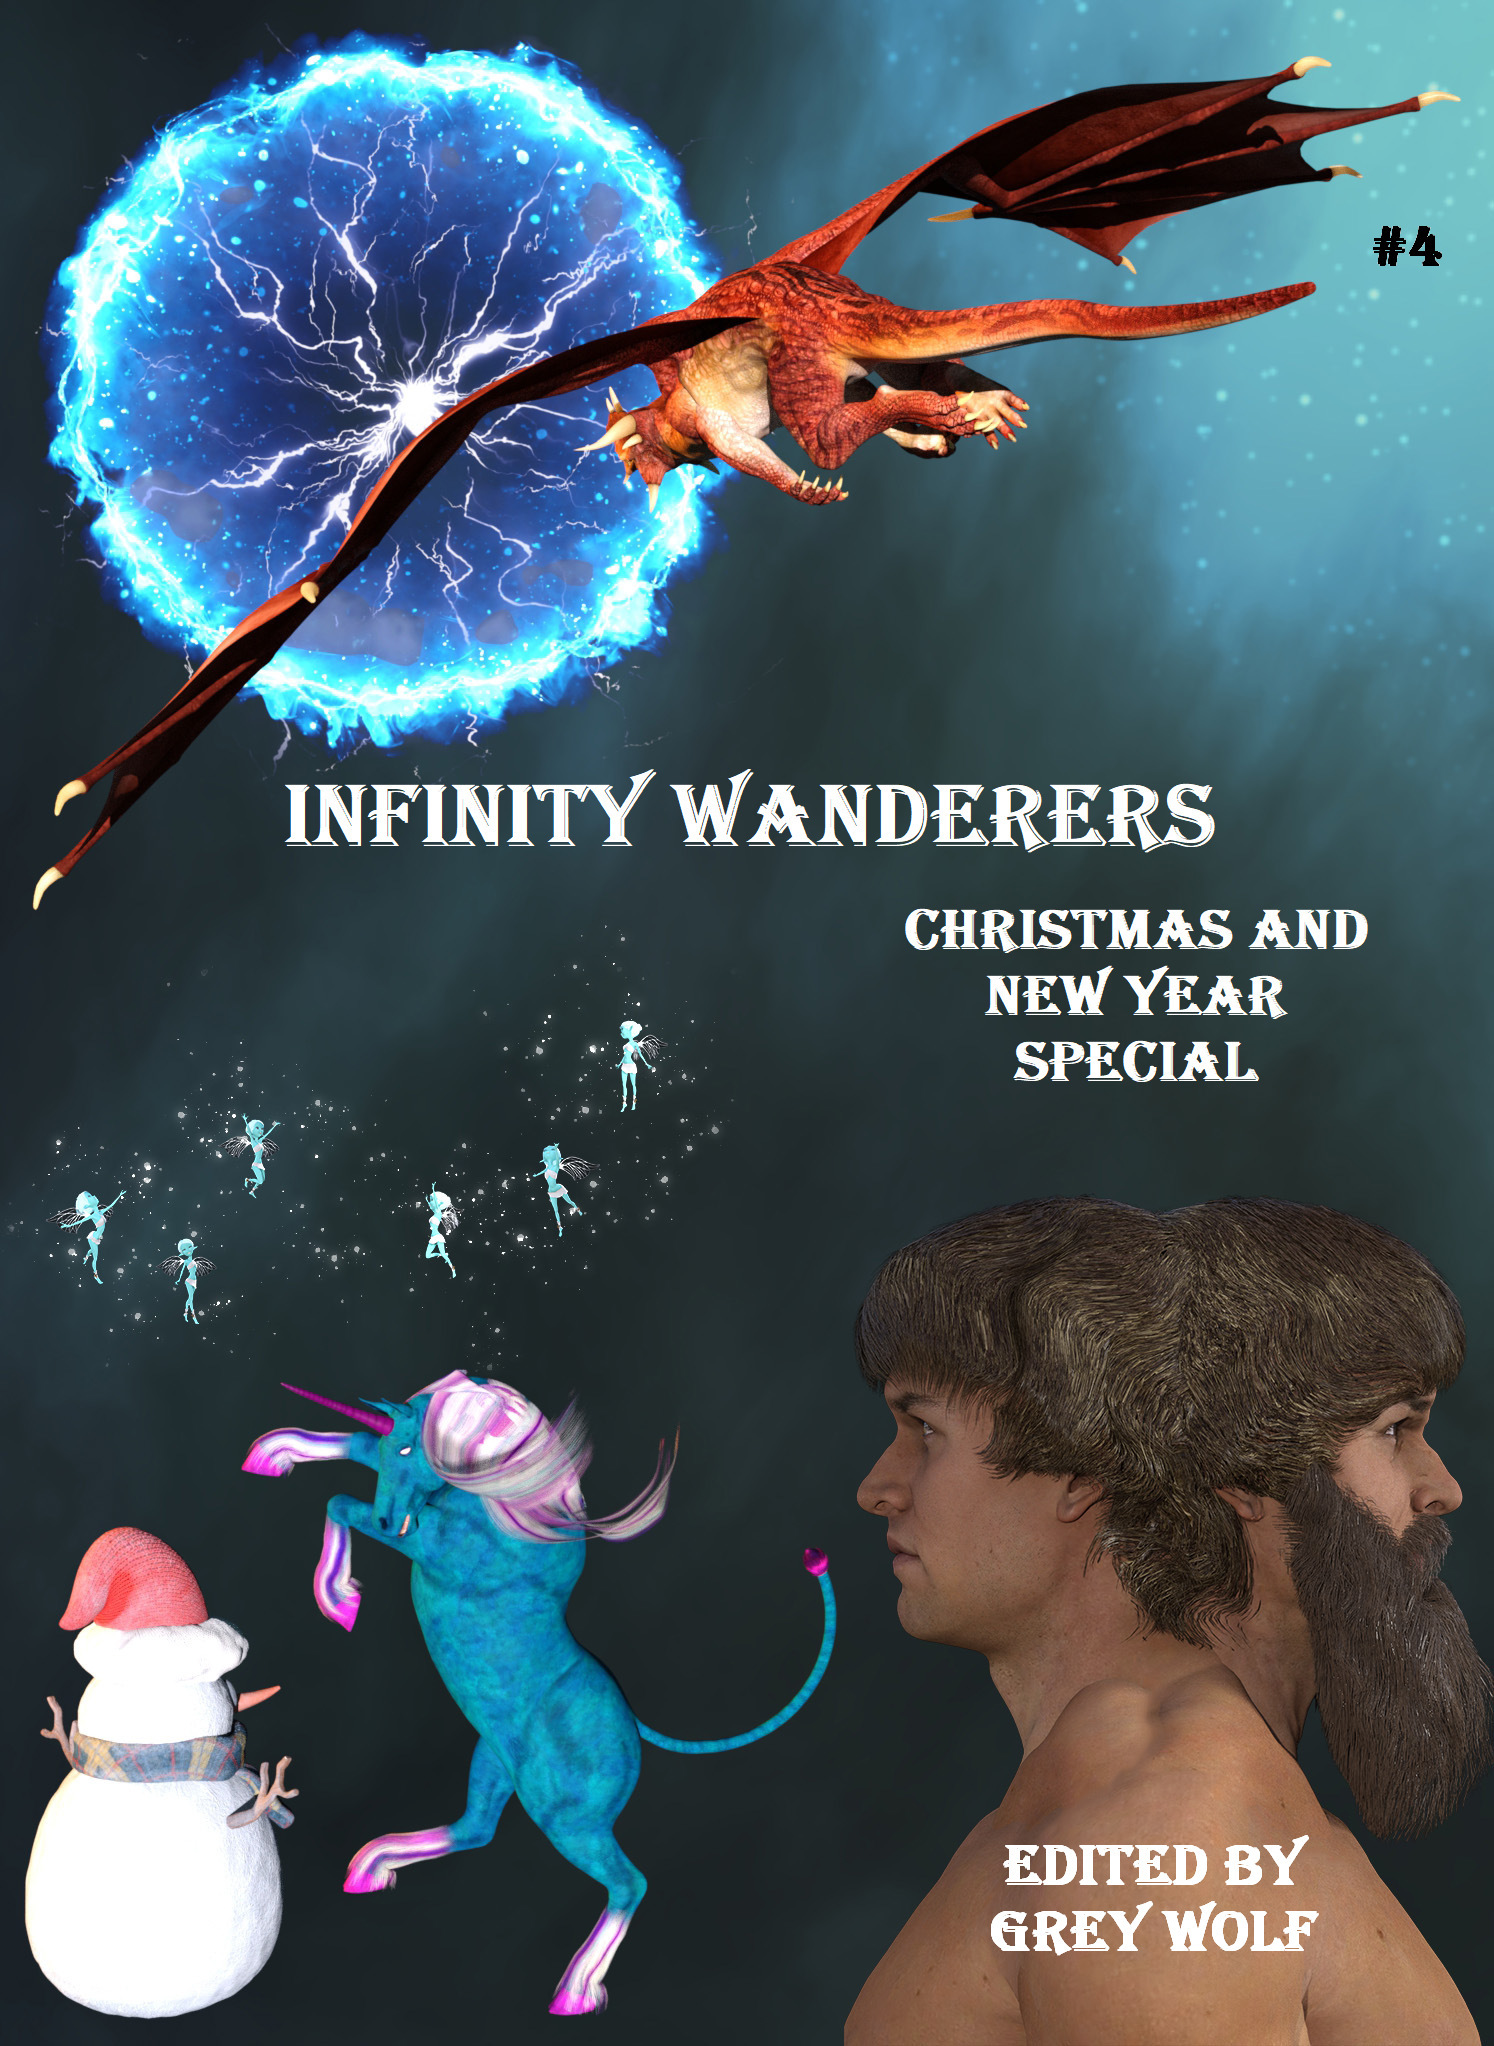 Infinity Wanderers #4